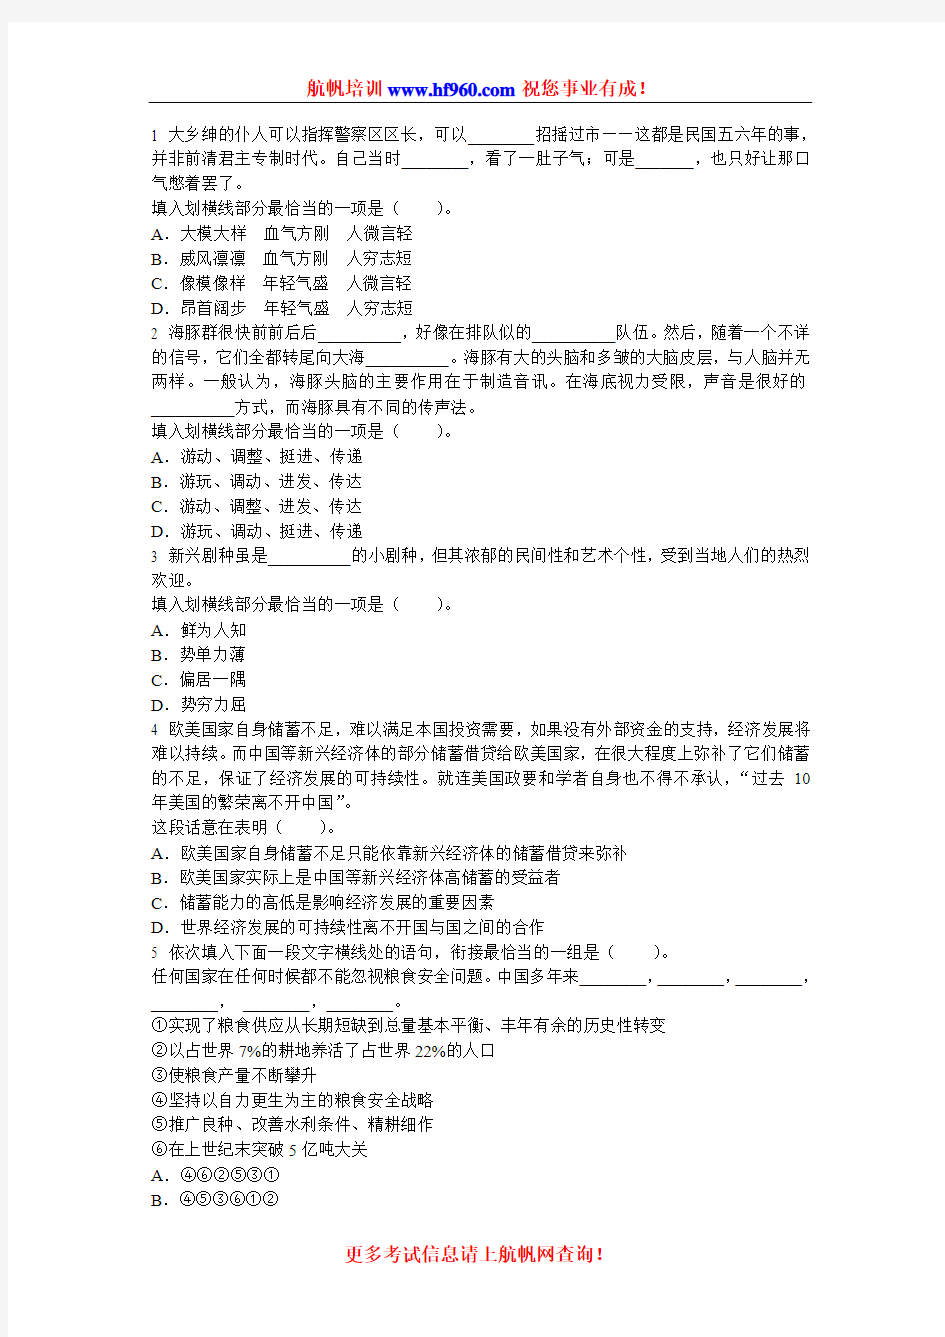 2014年丽江市事业单位招聘笔试知识考前预习题